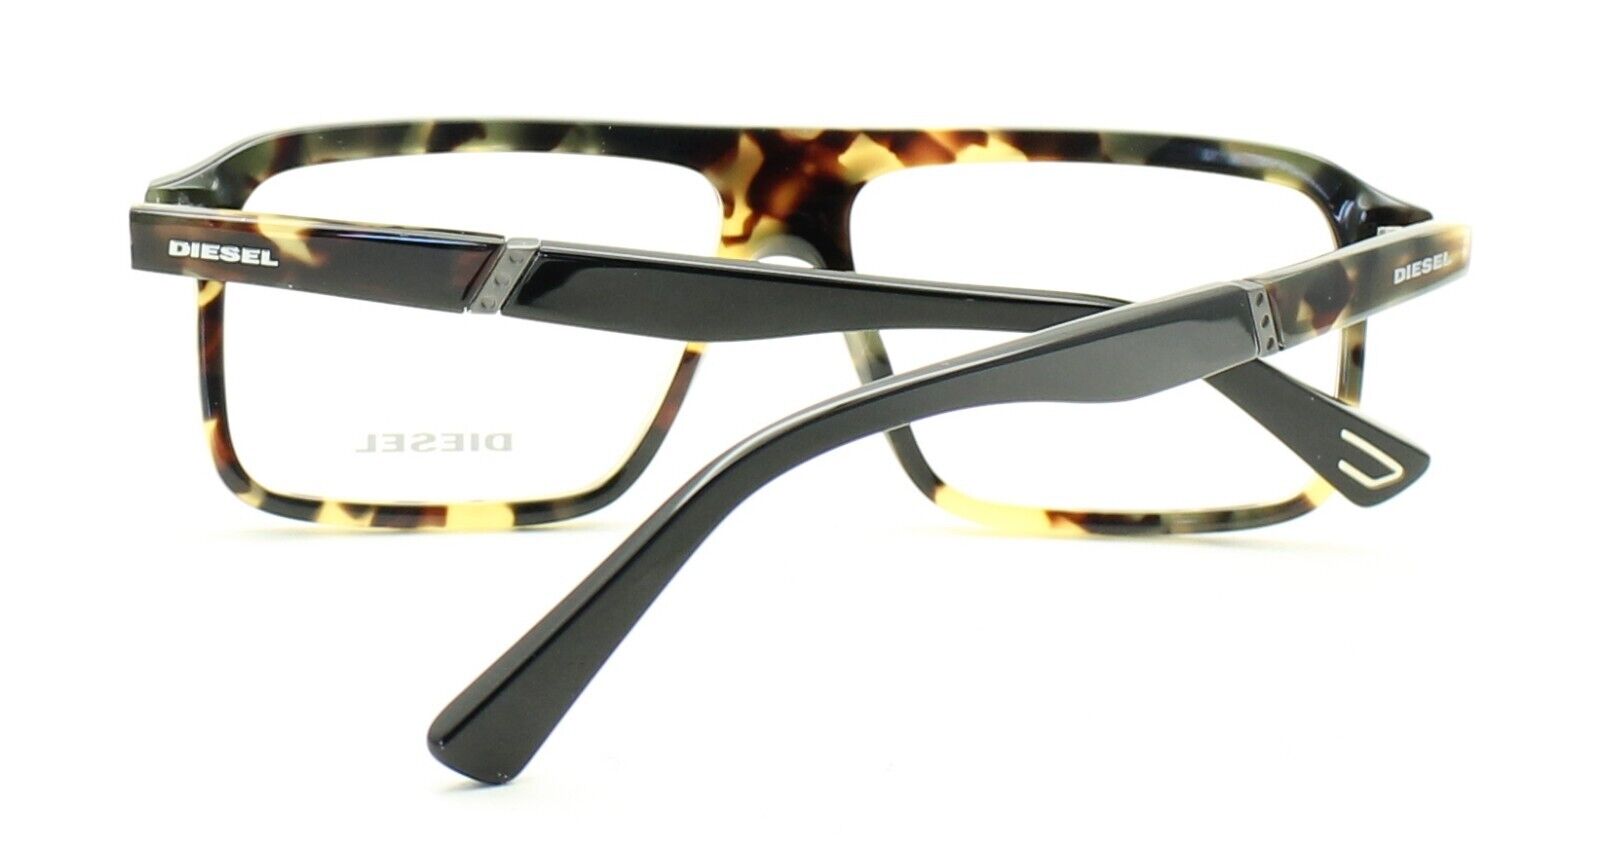 DIESEL DL5370 055 57mm Eyewear FRAMES RX Optical Eyeglasses Glasses New TRUSTED